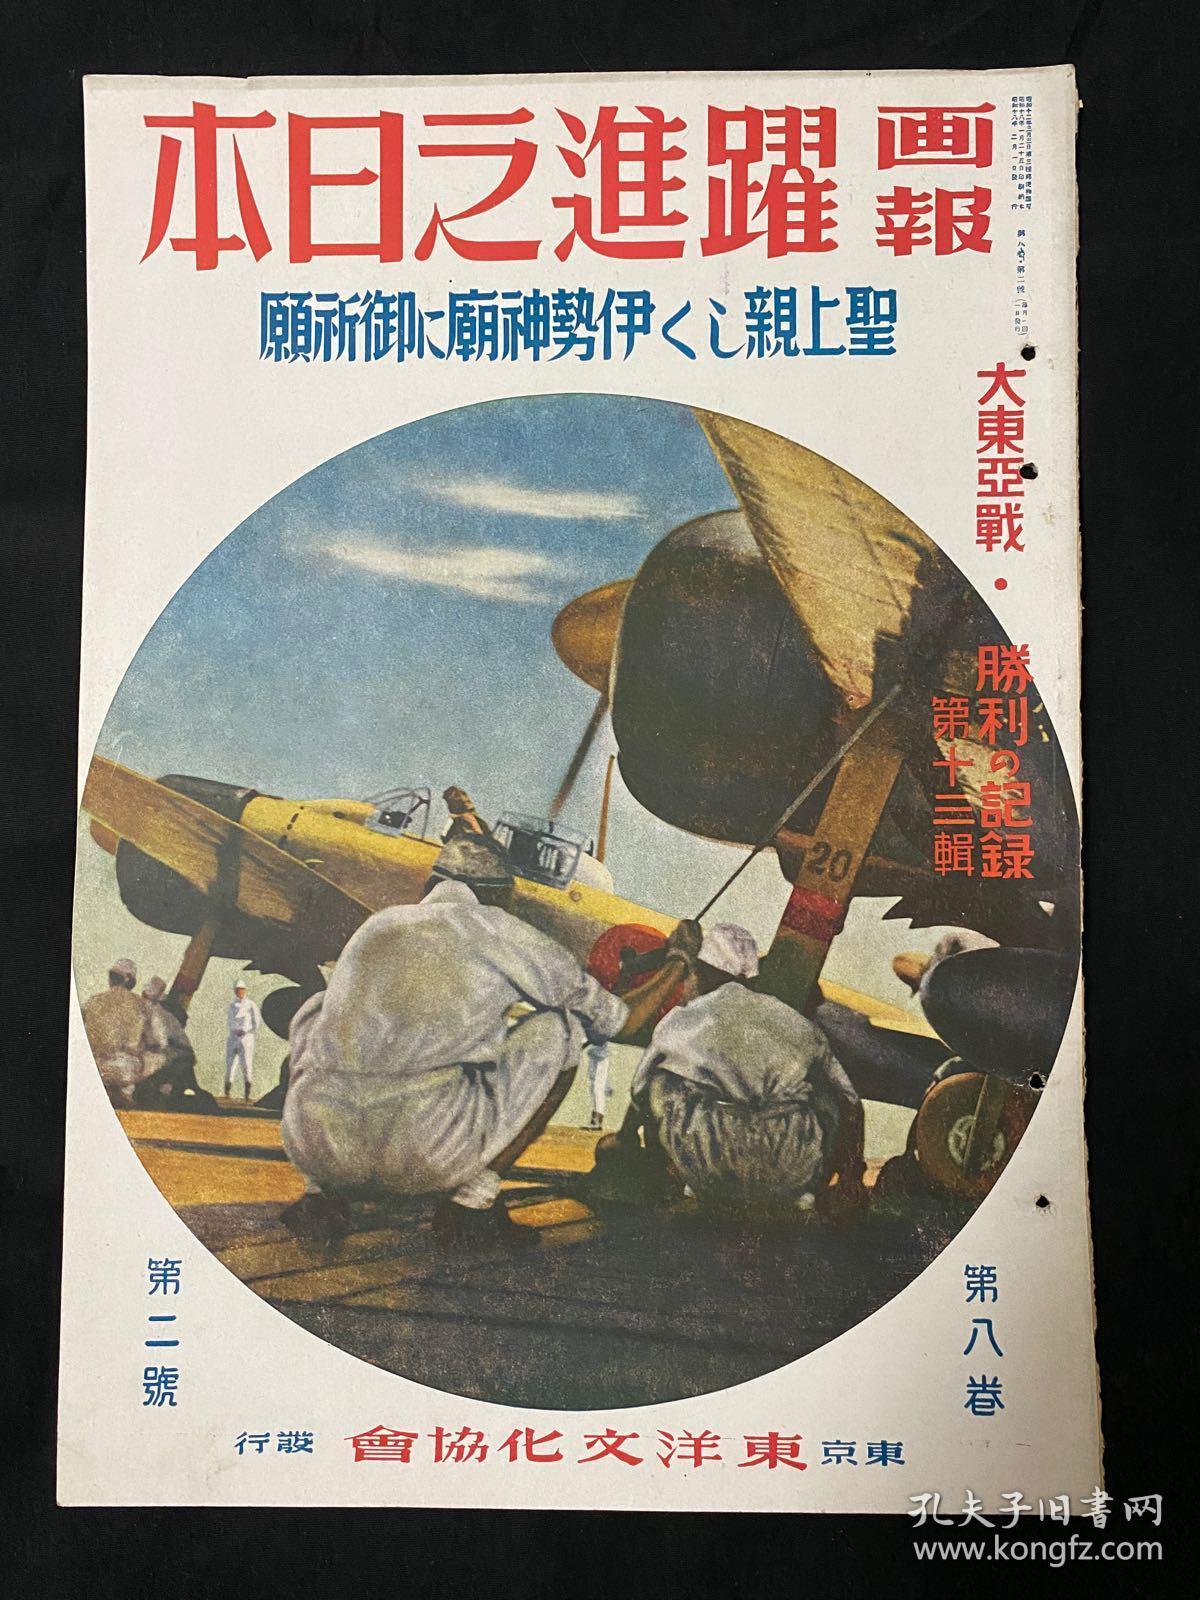 1943年2月 画报跃进之日本圣上亲临伊势神宫 第八卷第二号 孔夫子旧书网